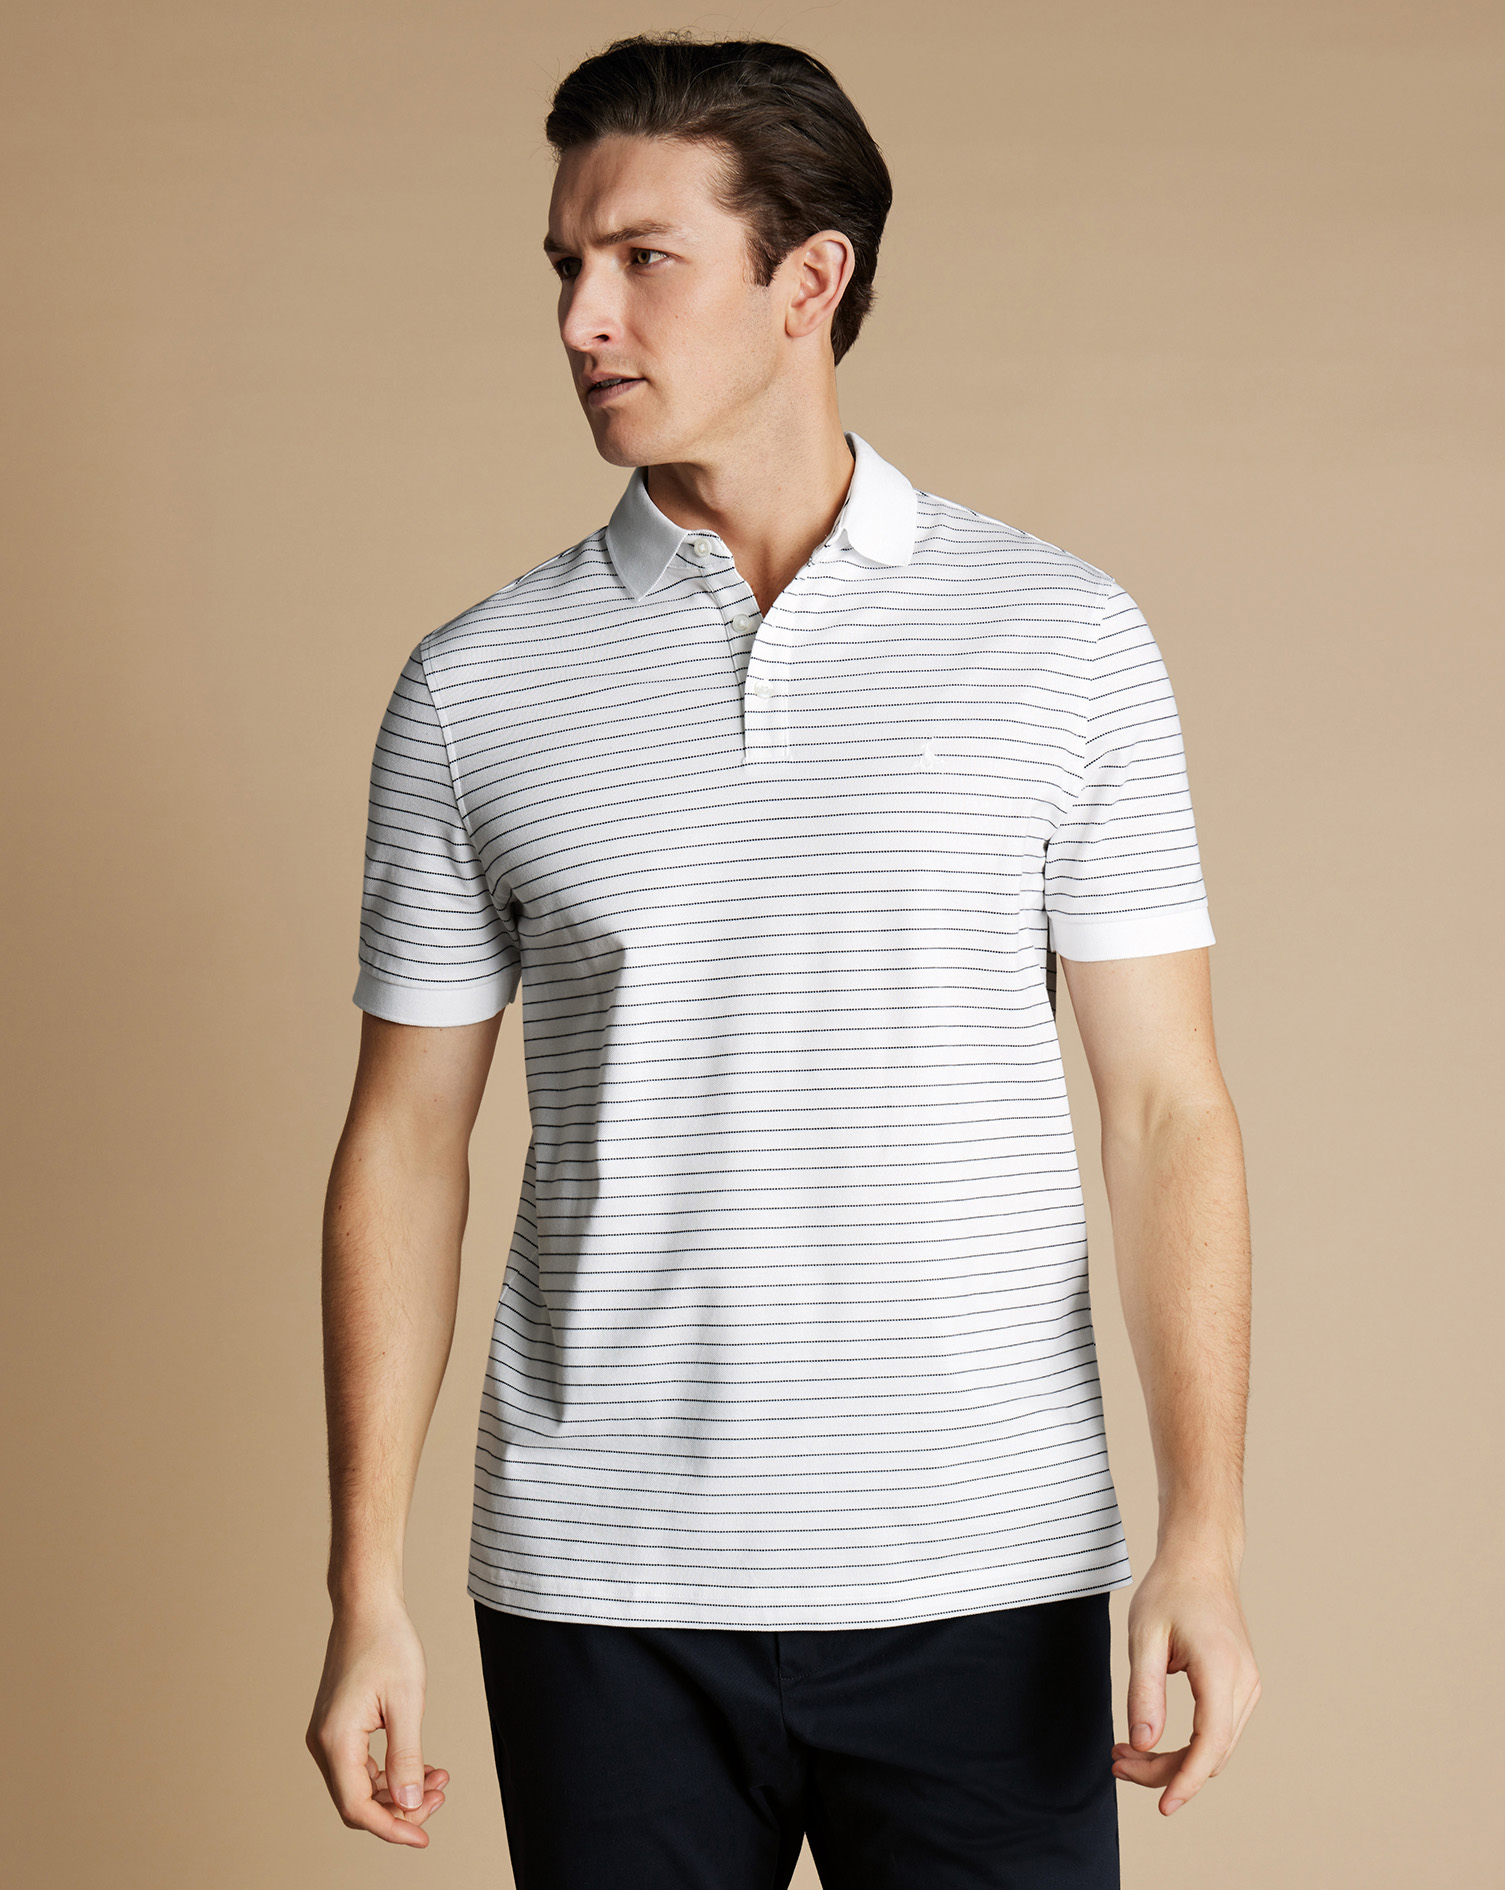 Men's Charles Tyrwhitt Pique Polo Shirt - White & Navy Size Small Cotton
